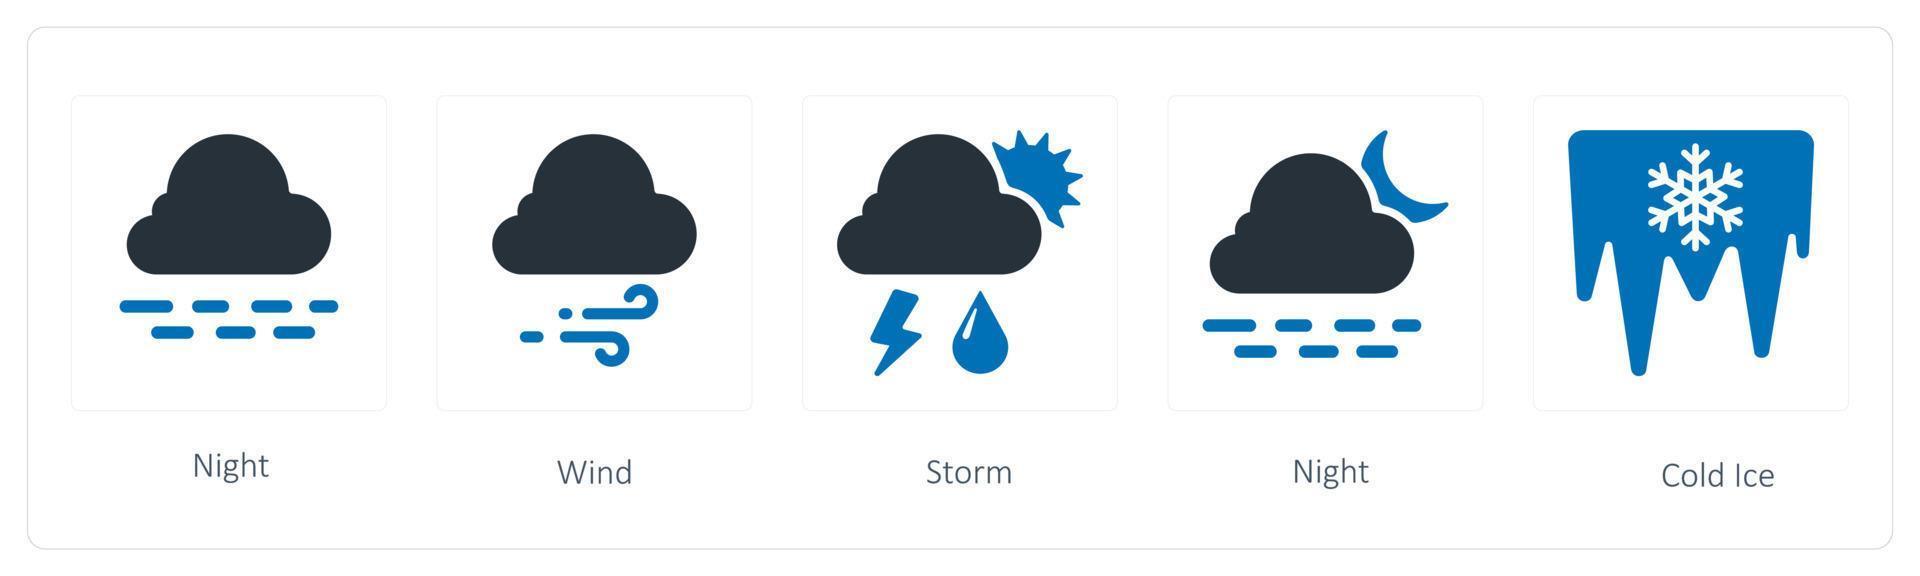 un' impostato di 5 tempo metereologico icone come come notte, vento e tempesta vettore